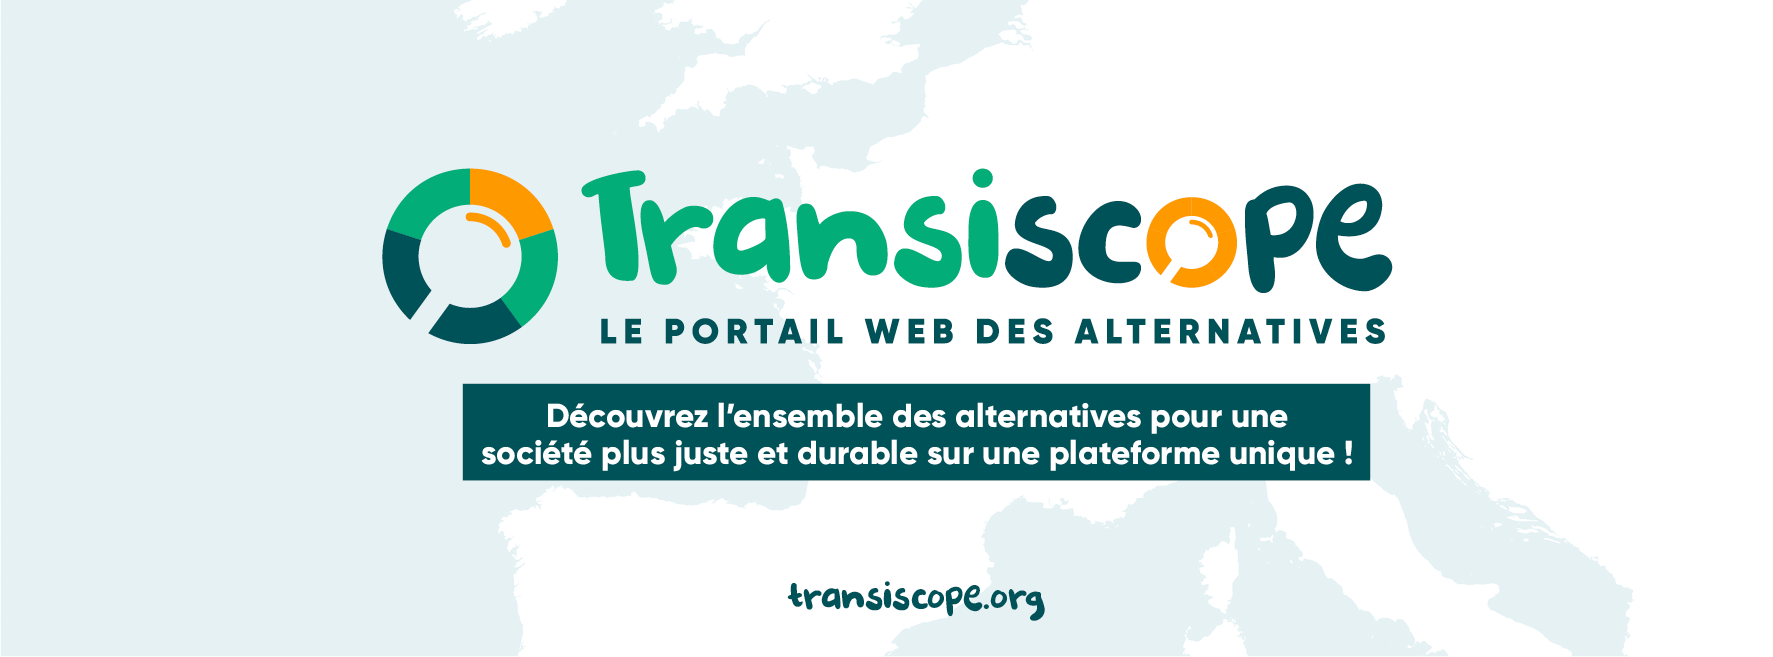 TRANSISCOPE : LE PORTAIL WEB DES ALTERNATIVES